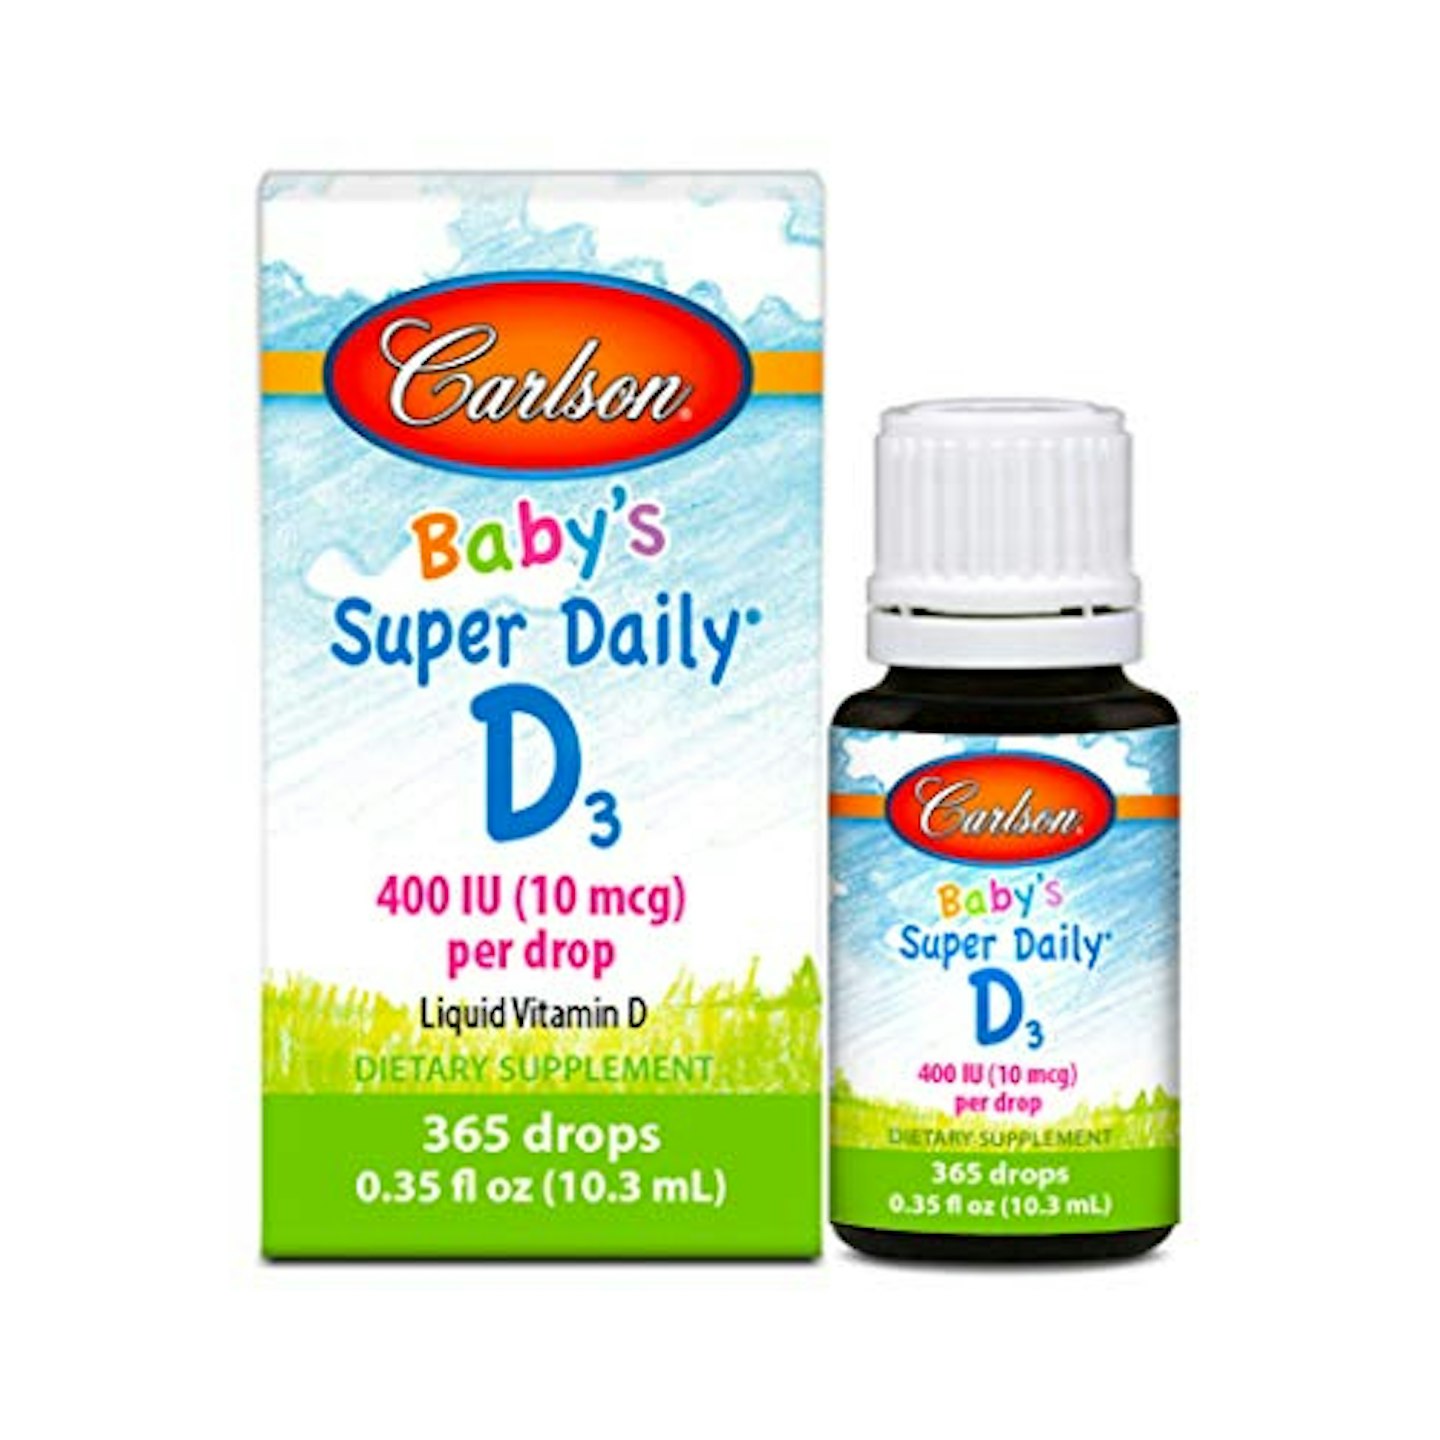 Carlson Super Daily D3 - Liquid Vitamin D for Baby